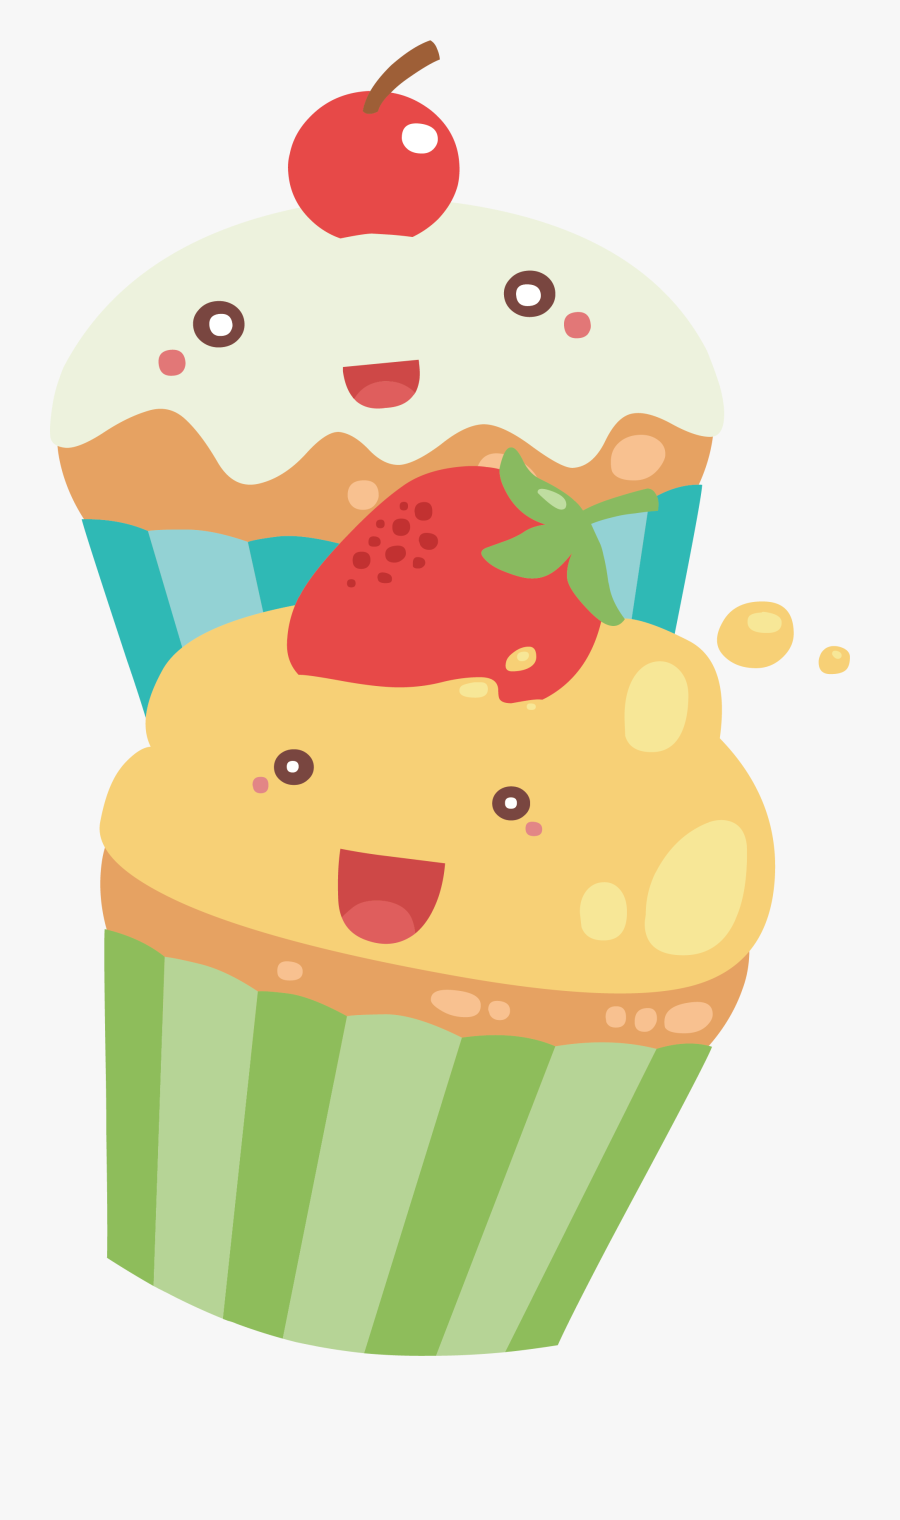 Cupcake Torta Muffin - Transparent Cute Cupcake Clipart, Transparent Clipart